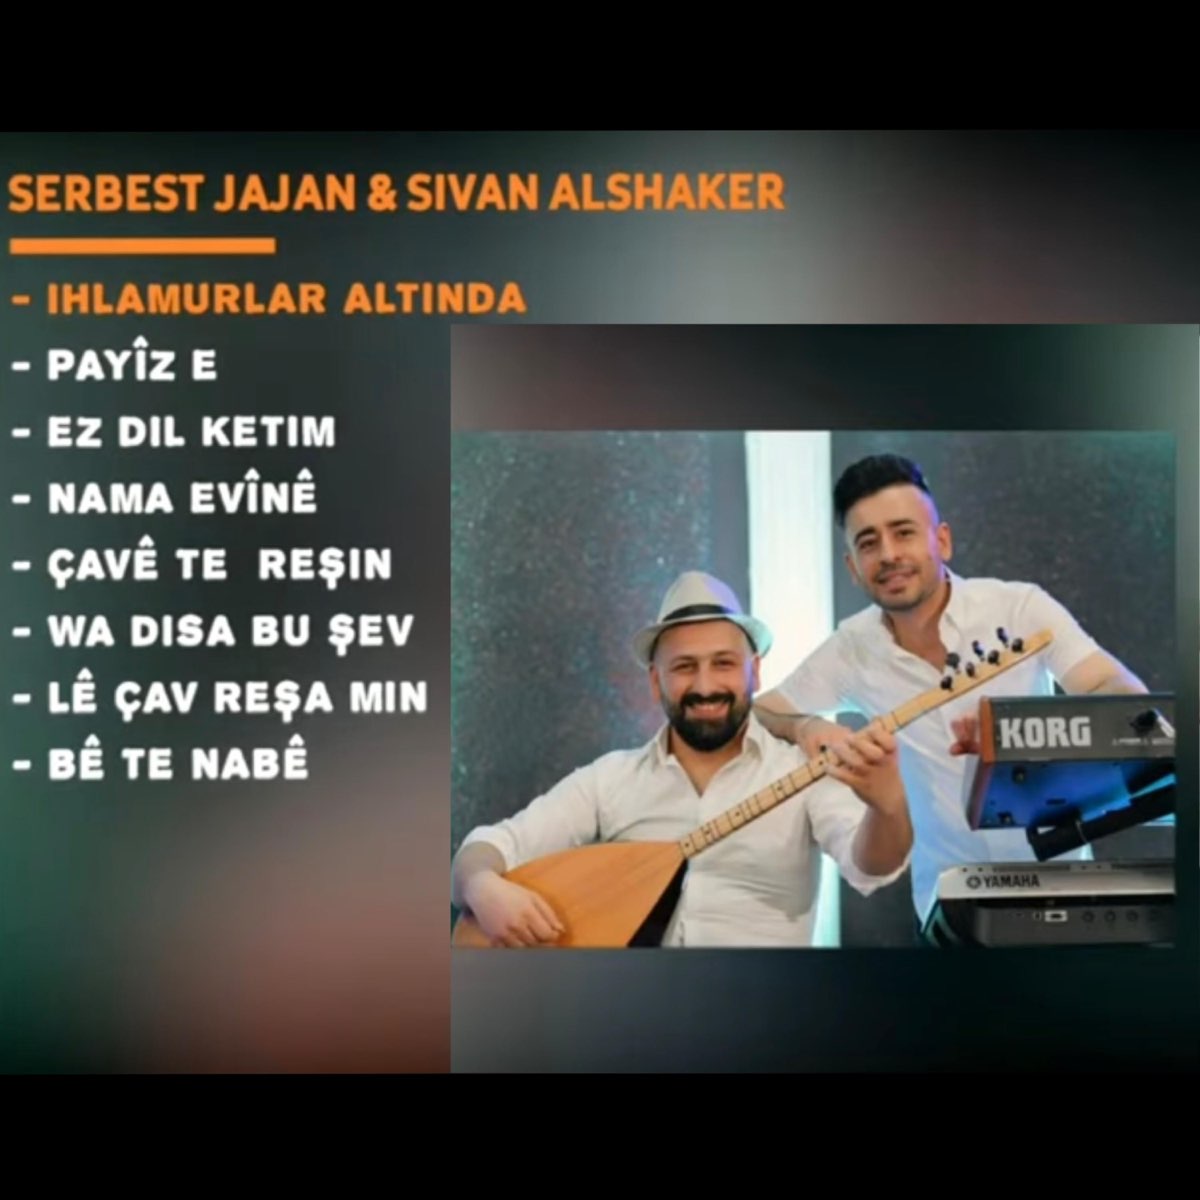 سنوات الضياع ، شجرة الزيزفون Ihlamurlai Altinda - Serbest Jajan & Sivan  Alshaker - Single by Serbest Jajan سربست جاجان on Apple Music